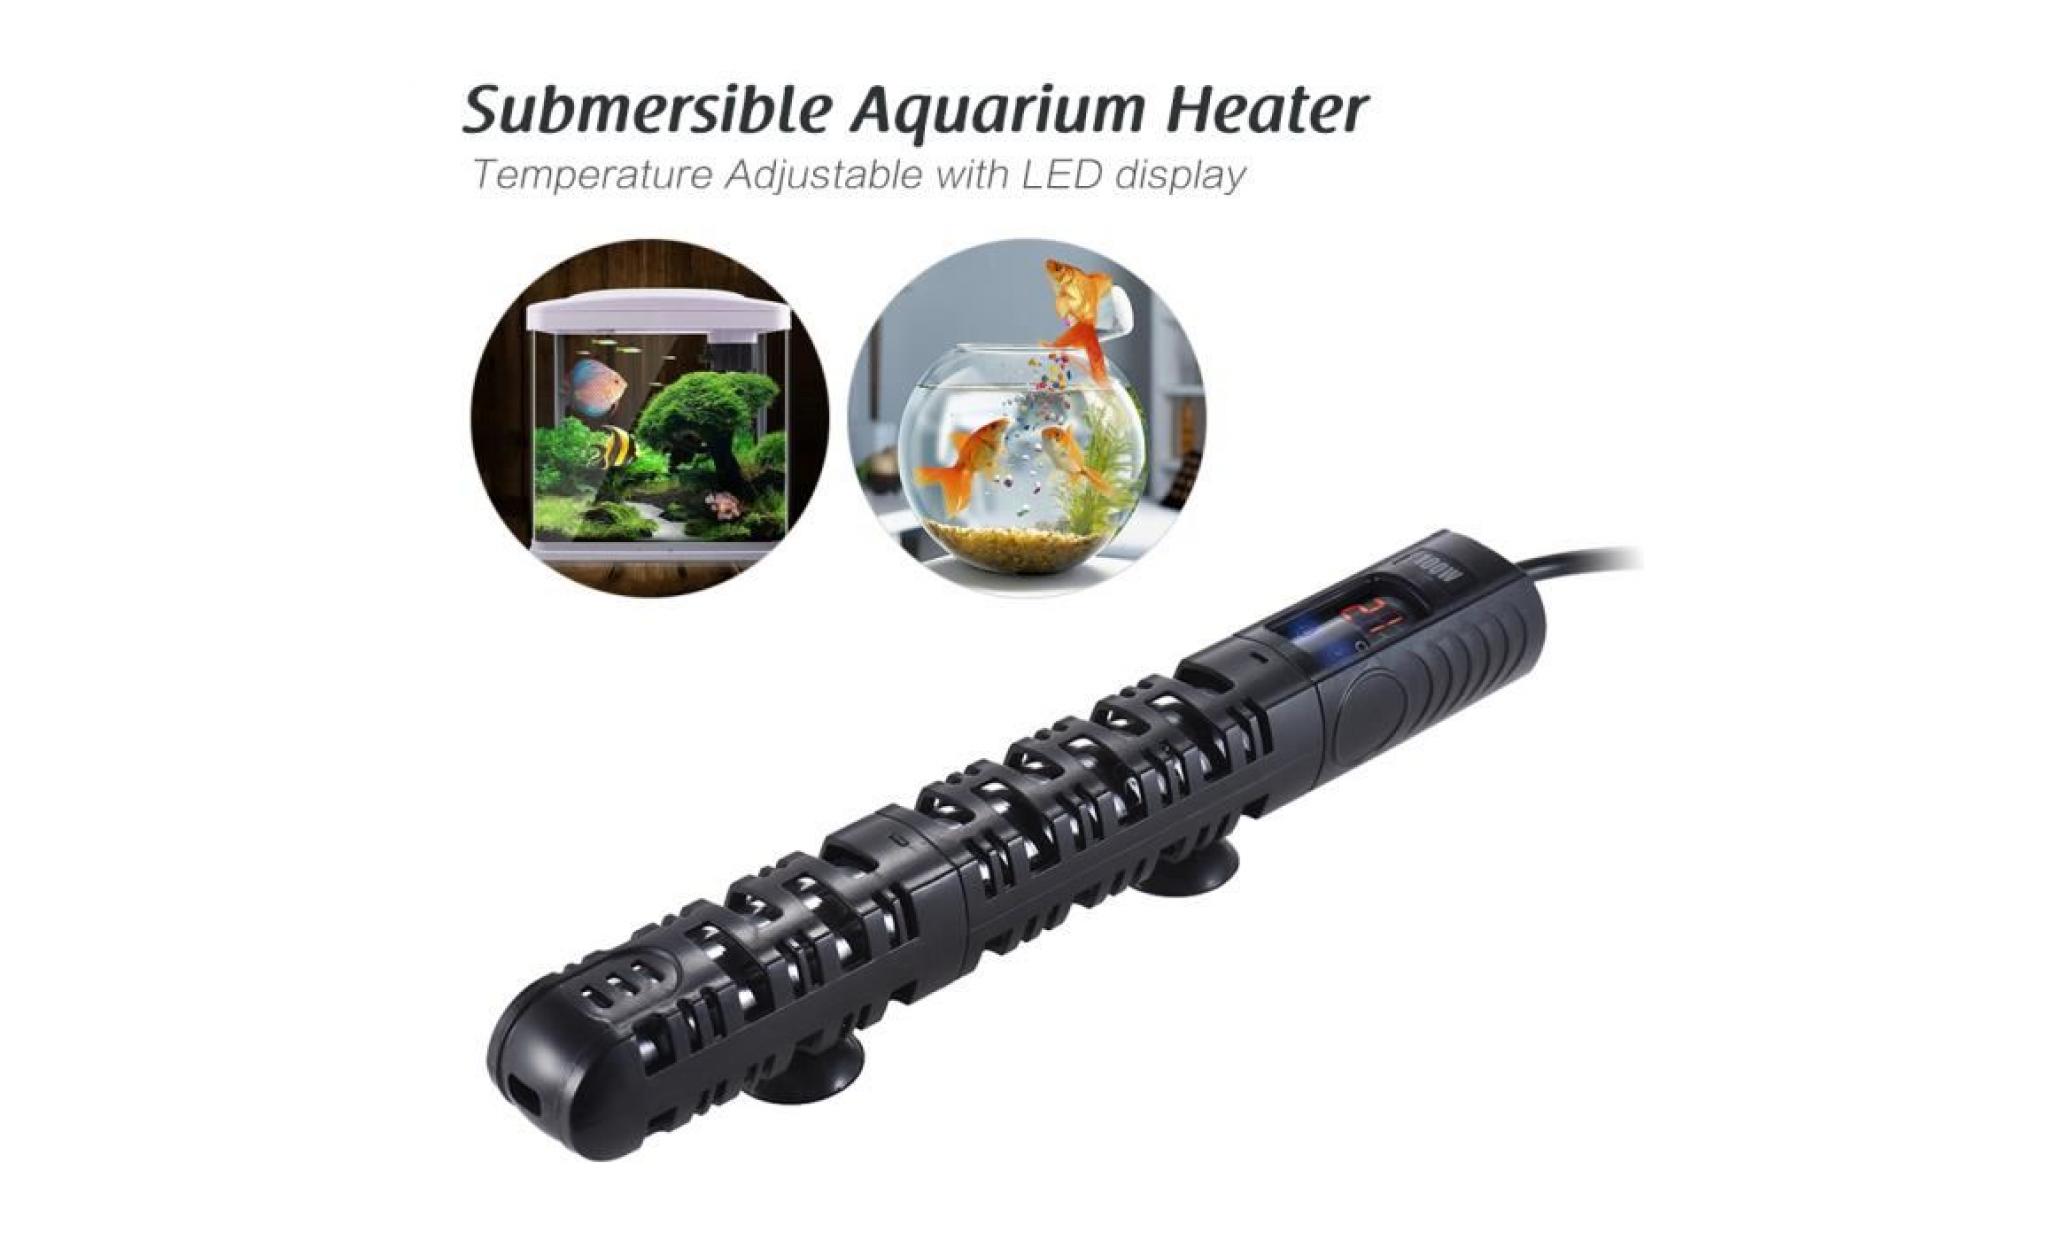 100w submersible aquarium chauffe poisson tige de chauffage température réglable avec led affichage manchon de protection ventouse